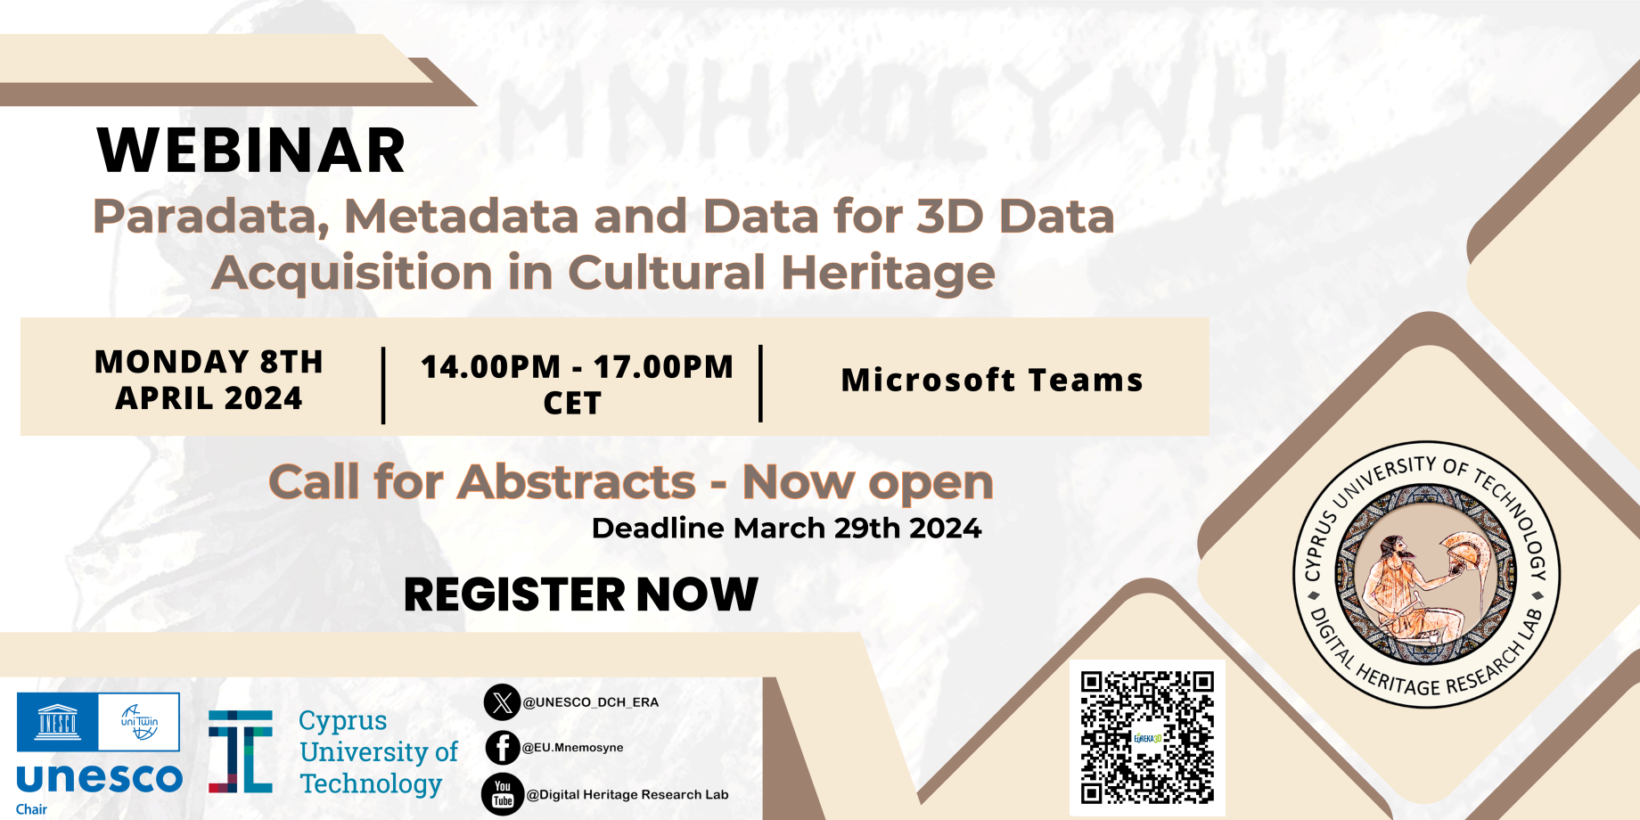 EVENT: Defining Paradata, Metadata & Data